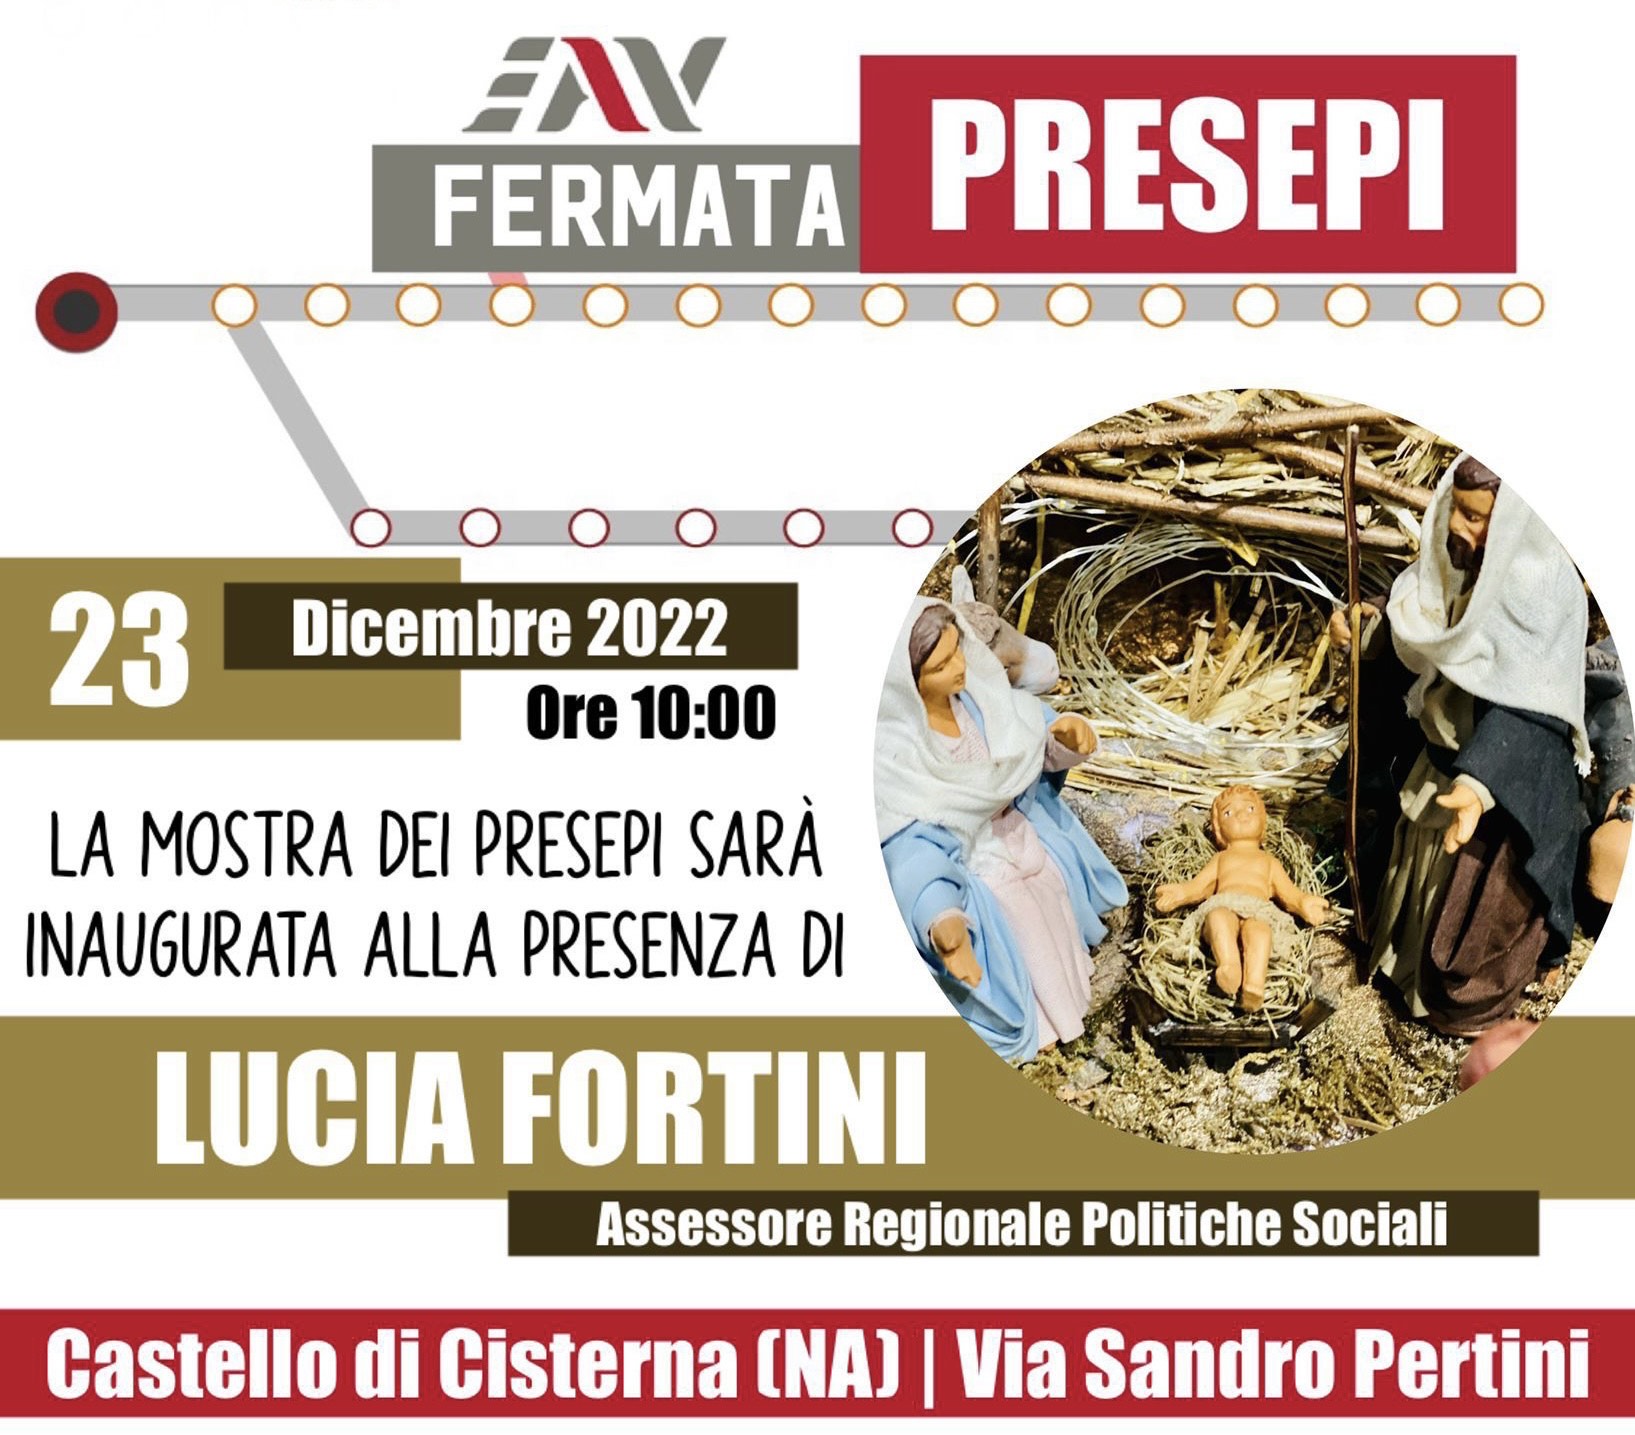 Castello di Cisterna, Stazione Circumvesuviana Eav: l’assessore regionale Lucia Fortini inaugura la mostra del presepe